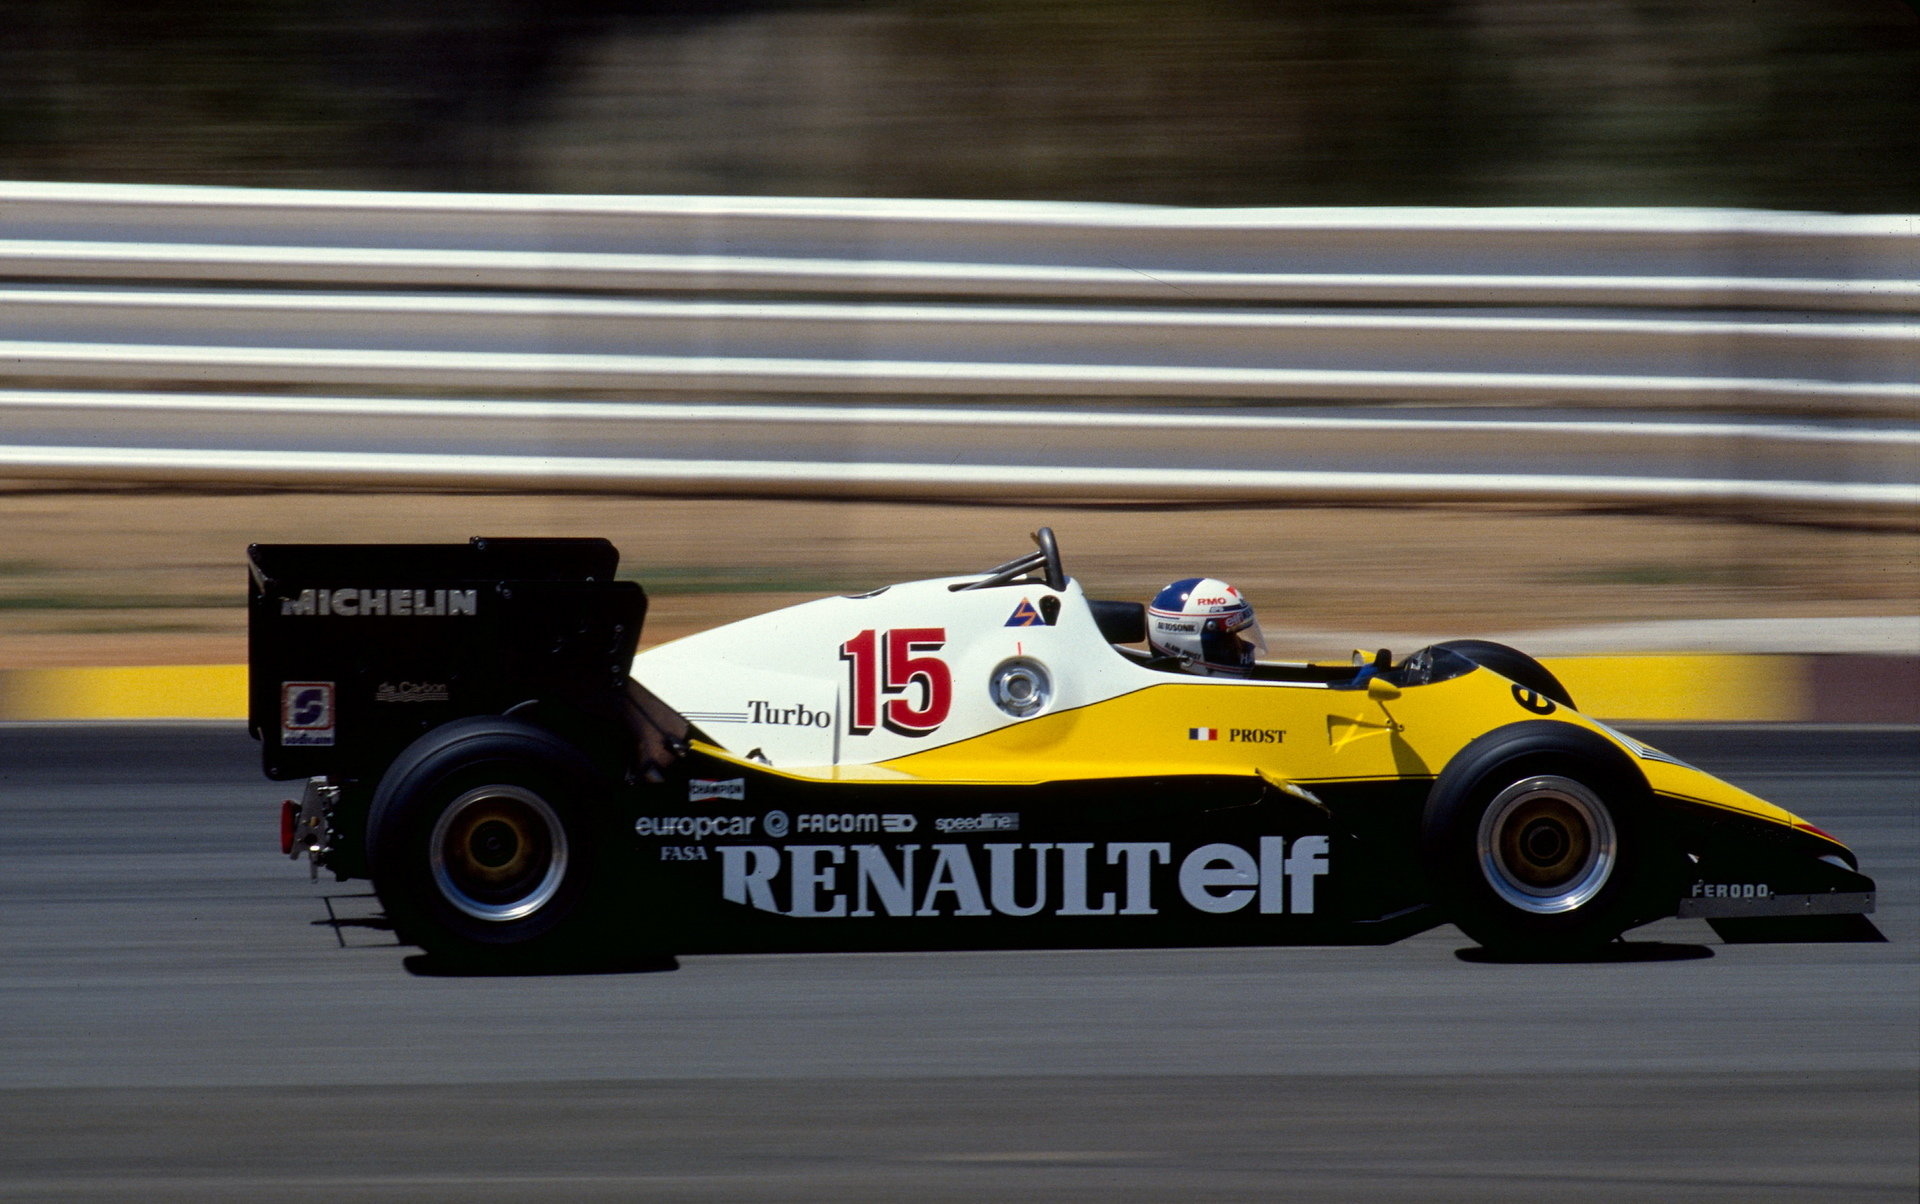 Chystá se Renault opět hájit v F1 cele vlastní barvy?